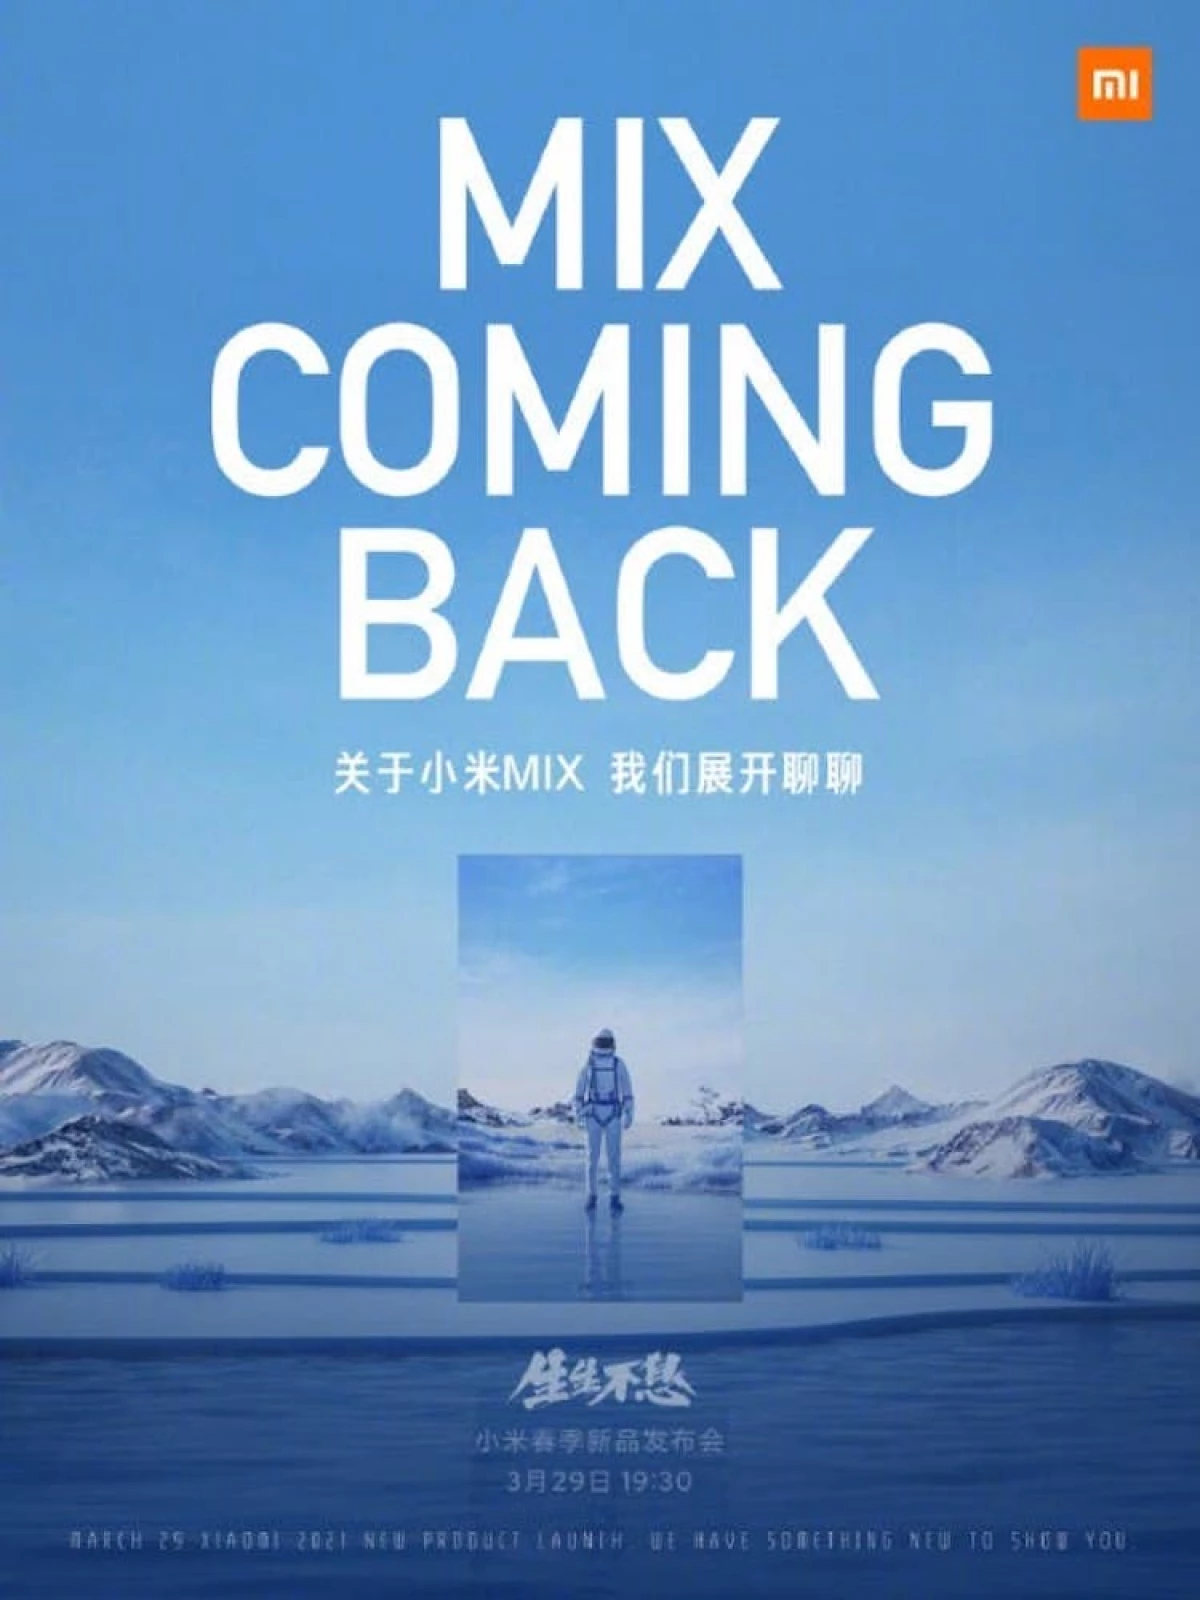 29 marzo, Xiaomi introdurrà tre smartphone top contemporaneamente. Mix retorni MI! 7891_3